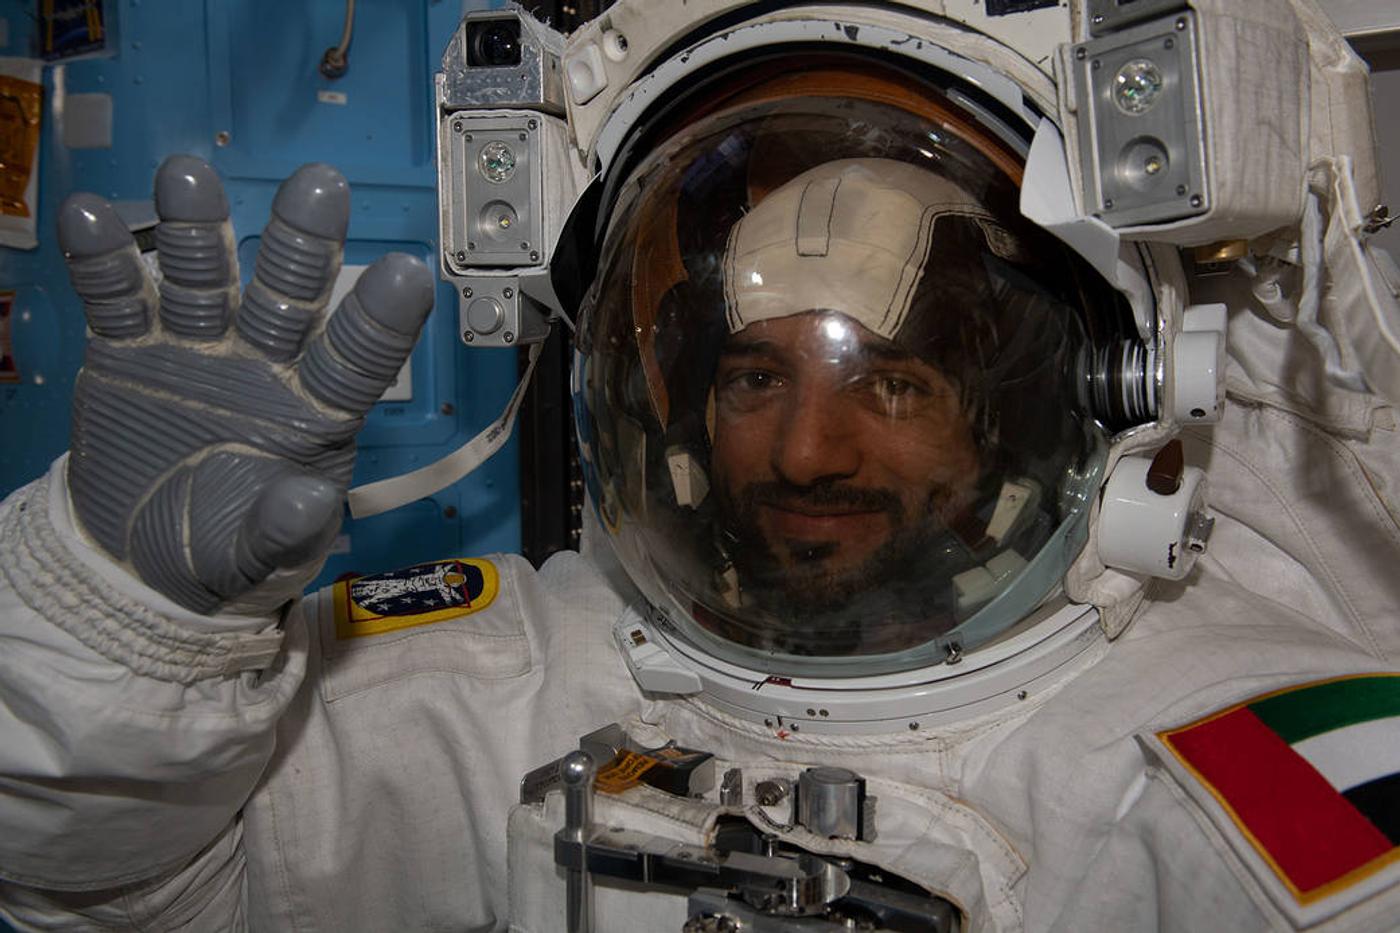 Sultan AlNeyadi tries on his spacesuit before his space walk.